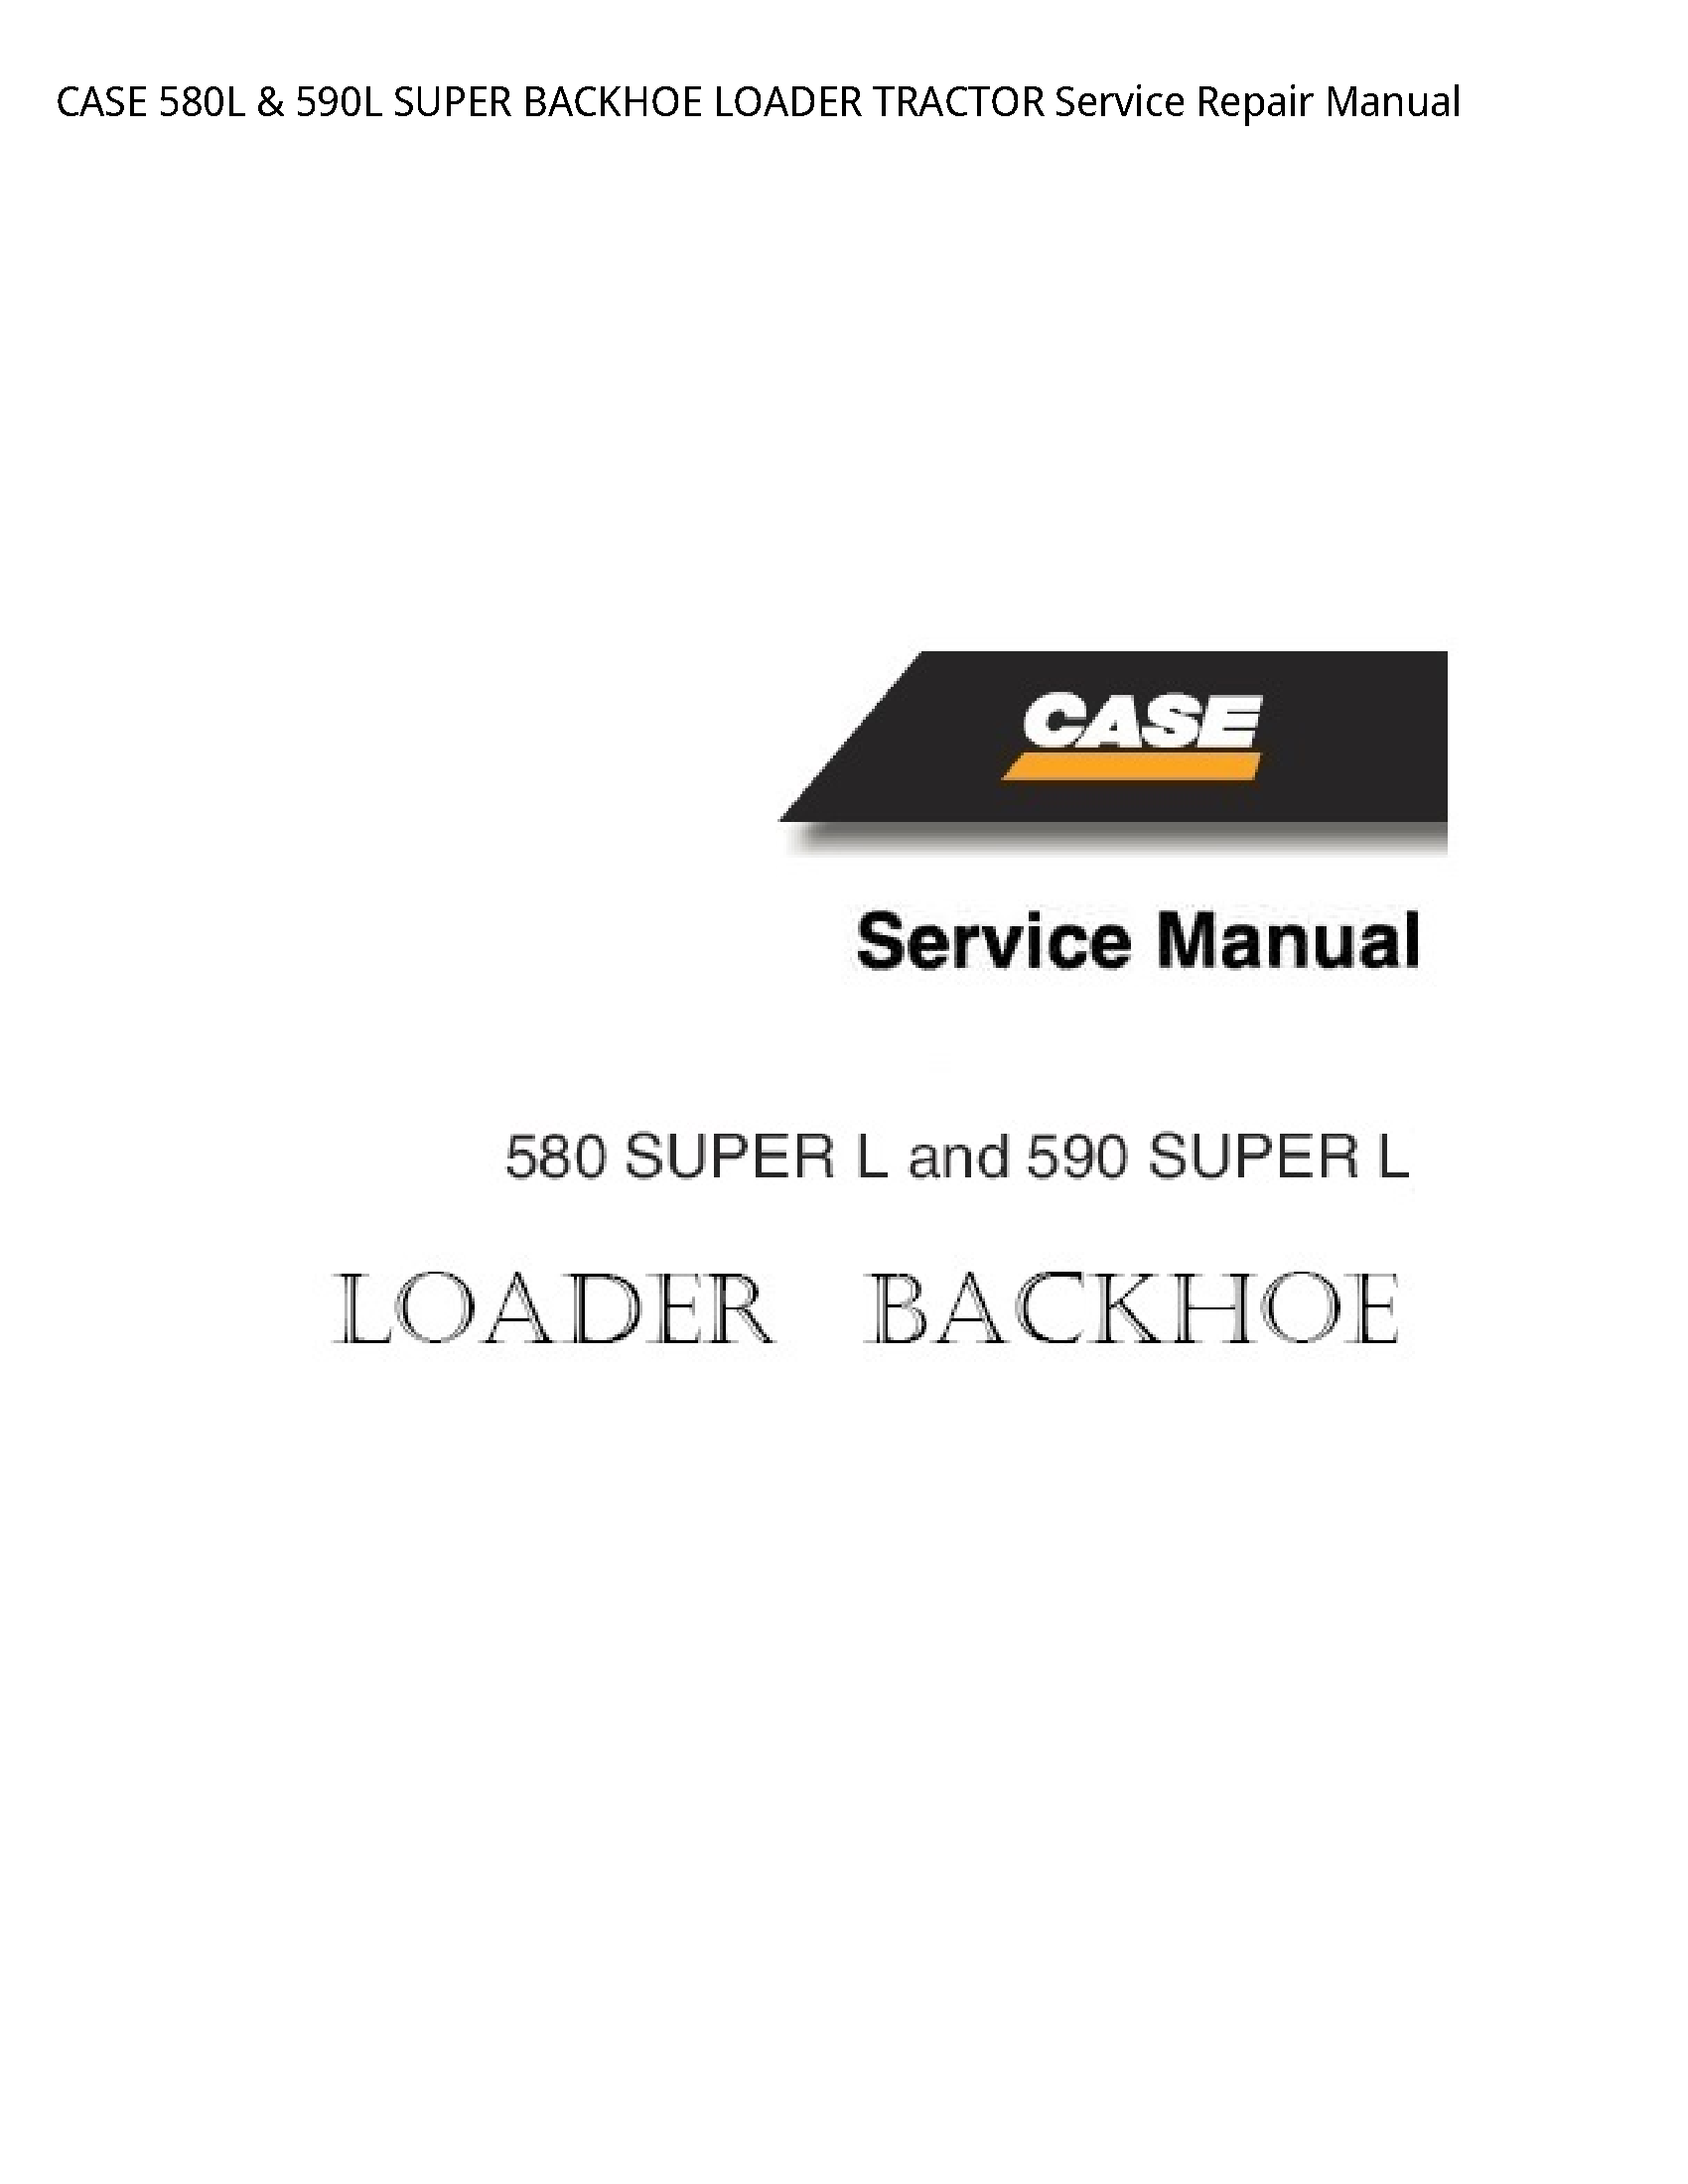 Case/Case IH 580L SUPER BACKHOE LOADER TRACTOR manual